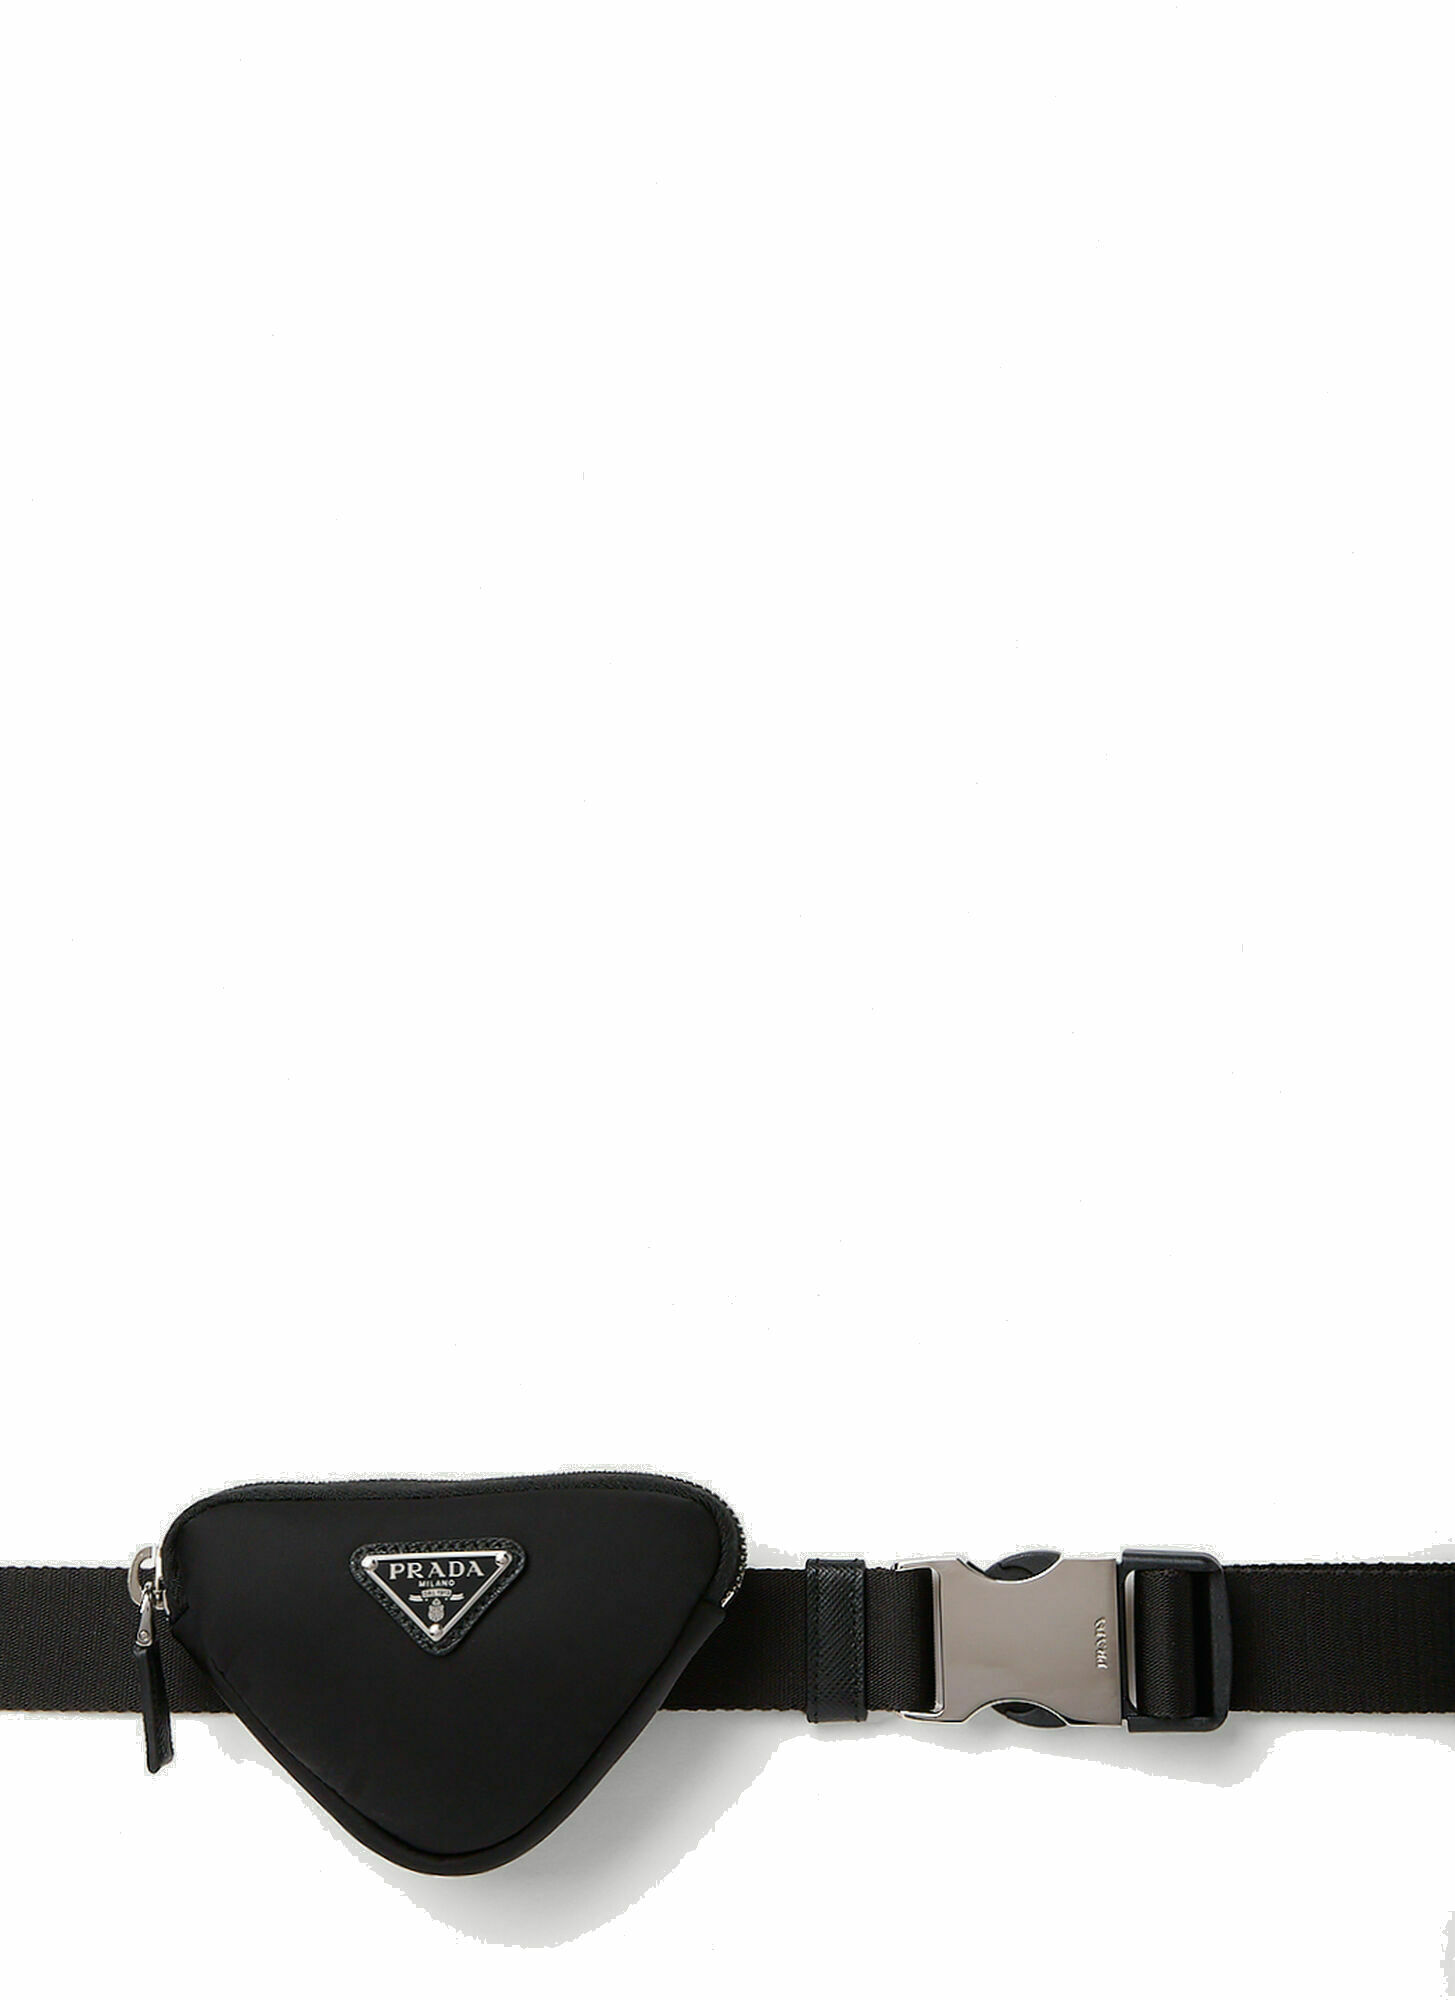 Photo: Nastro Belt Bag in Black